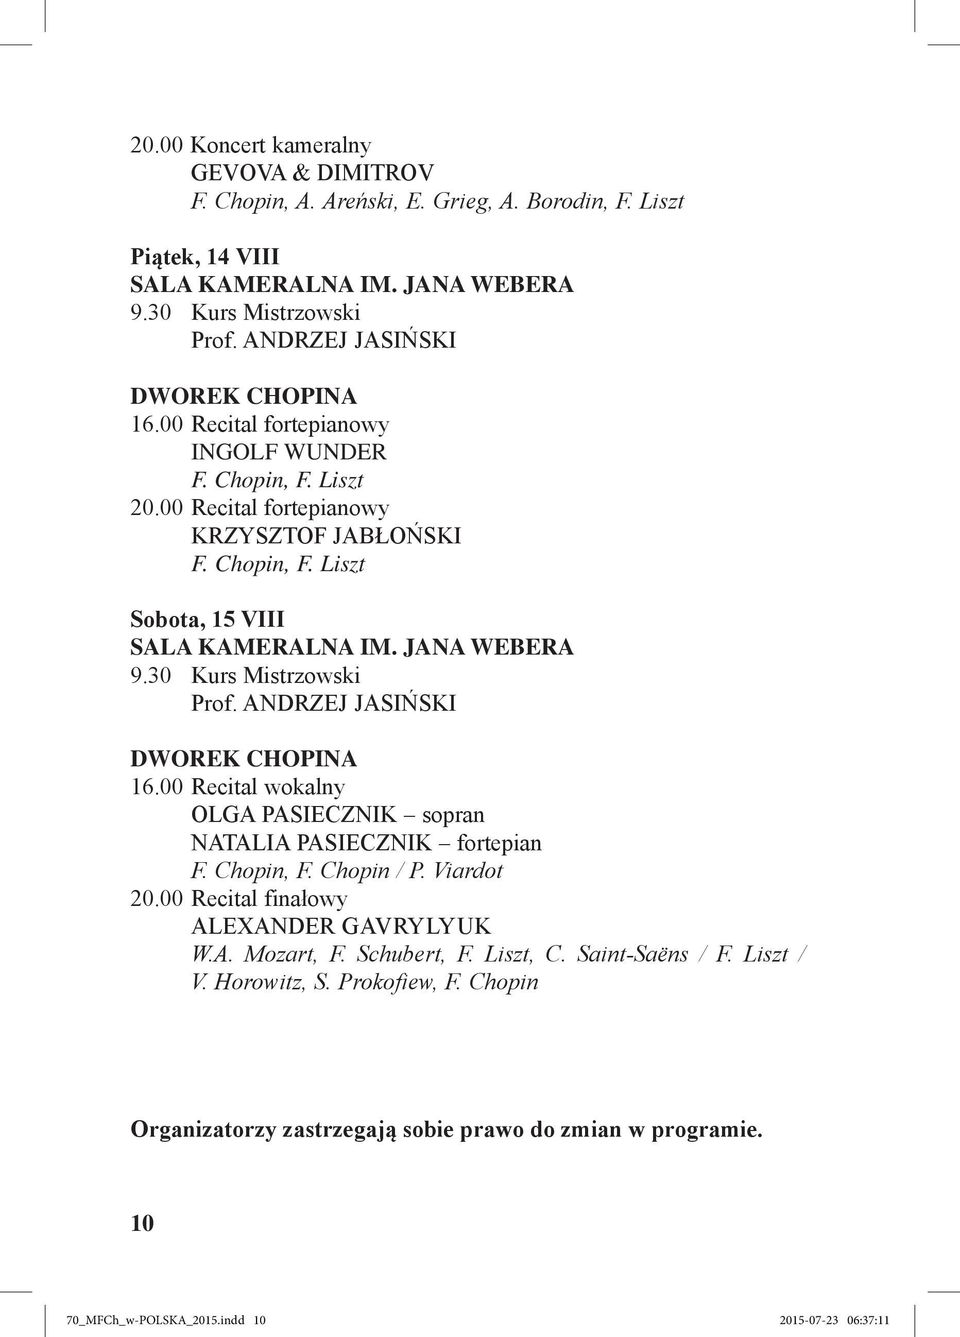 JANA WEBERA 9.30 Kurs Mistrzowski Prof. ANDRZEJ JASIŃSKI DWOREK CHOPINA 16.00 Recital wokalny OLGA PASIECZNIK sopran NATALIA PASIECZNIK fortepian F. Chopin, F. Chopin / P. Viardot 20.